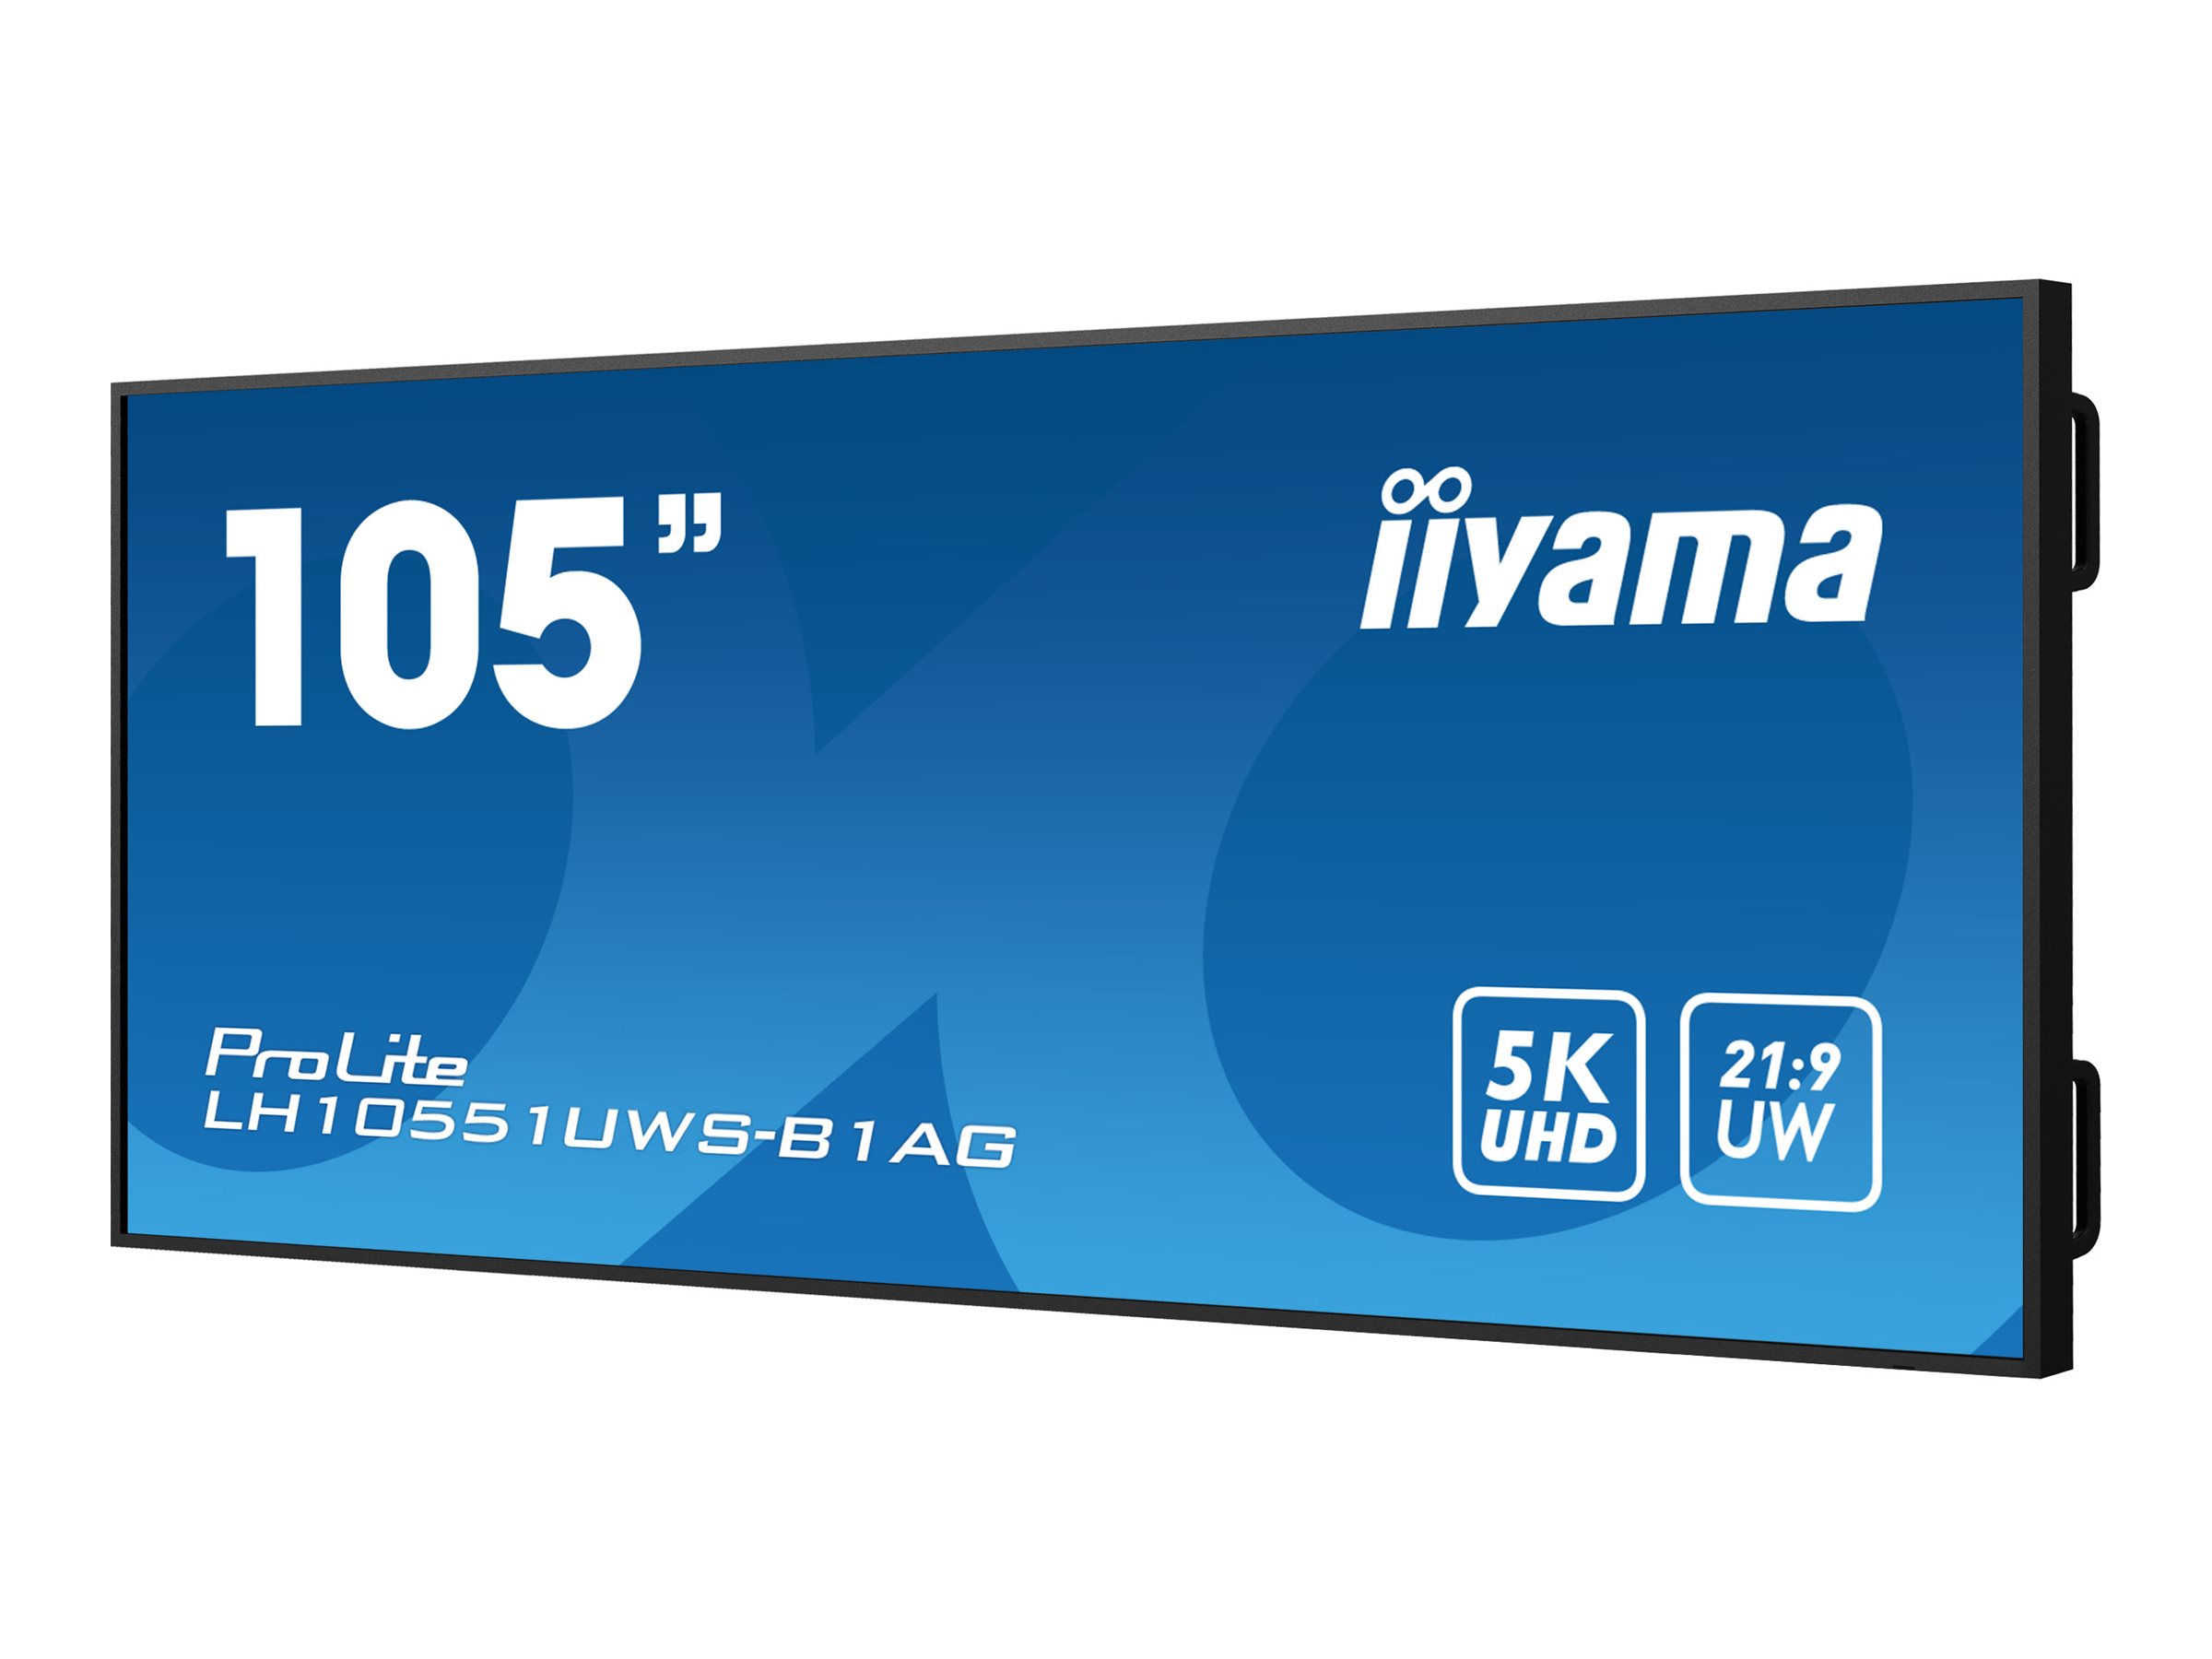 iiyama ProLite LH10551UWS-B1AG - Classe de diagonale 105" (104.7" visualisable) écran LCD rétro-éclairé par LED - signalisation numérique - 5K UHD (2160p) 5120 x 2160 - noir - LH10551UWS-B1AG - Écrans de signalisation numérique